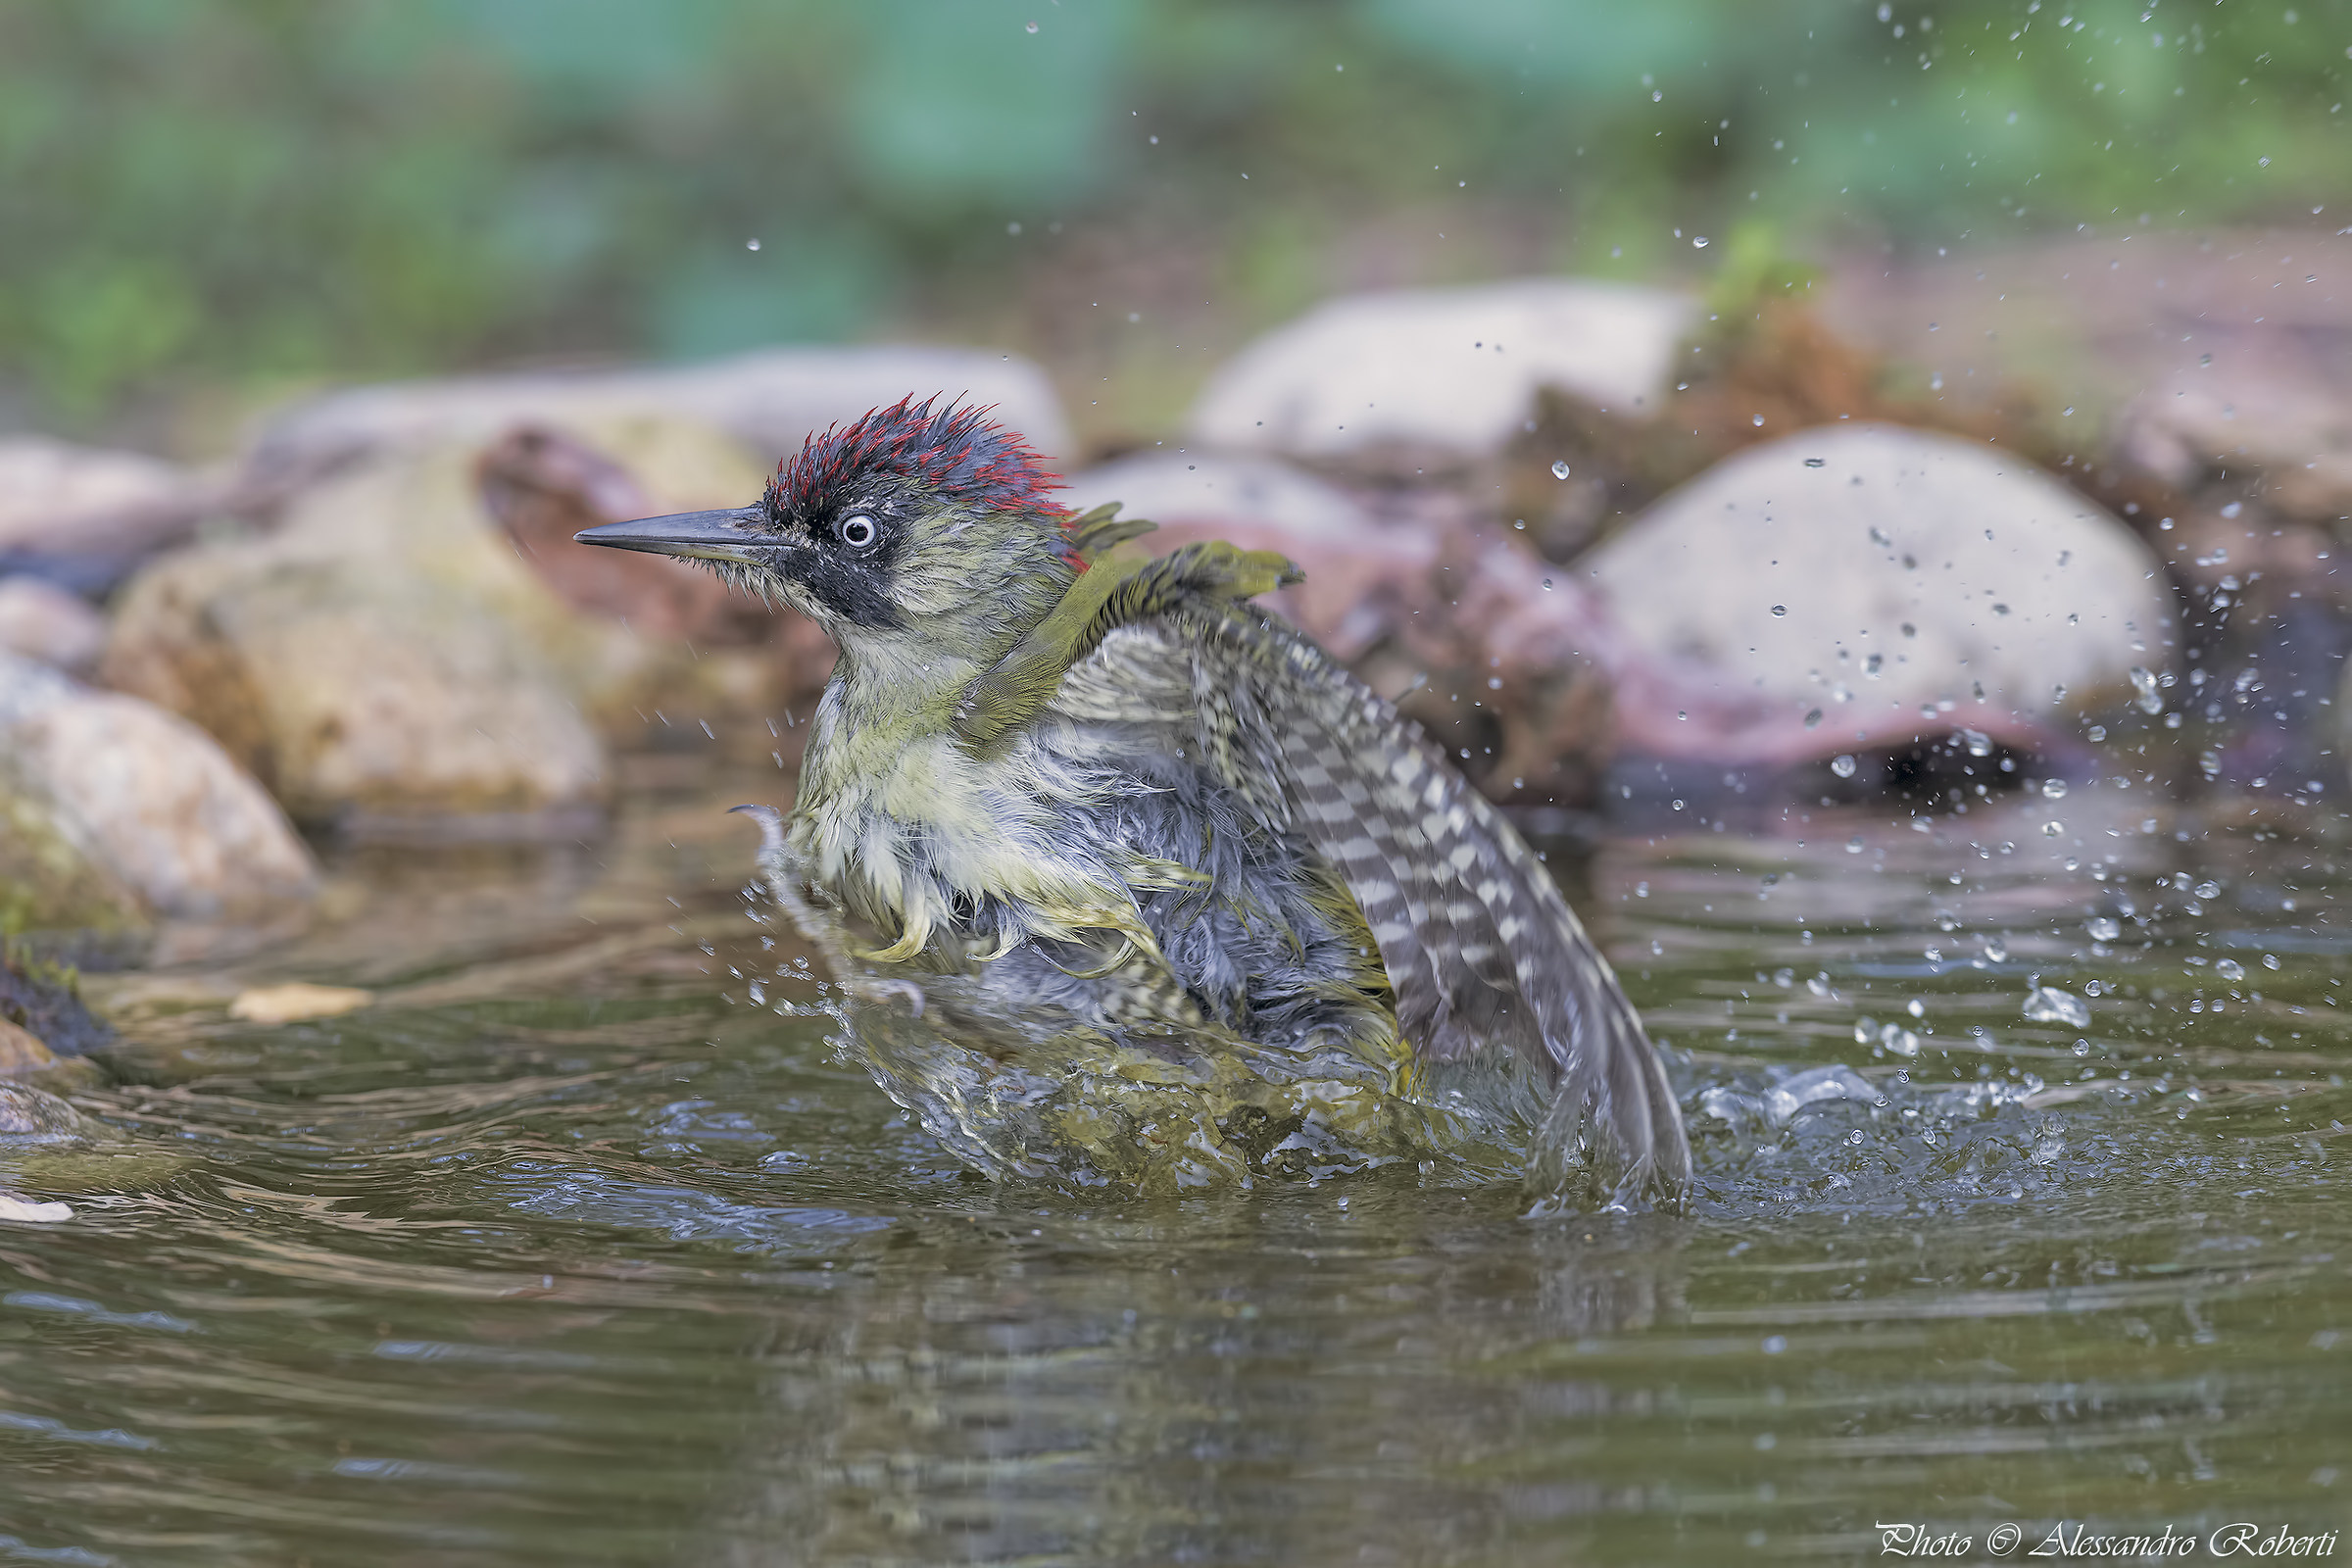 Green woodpecker at the bath ..... Kmanno Km / 0...